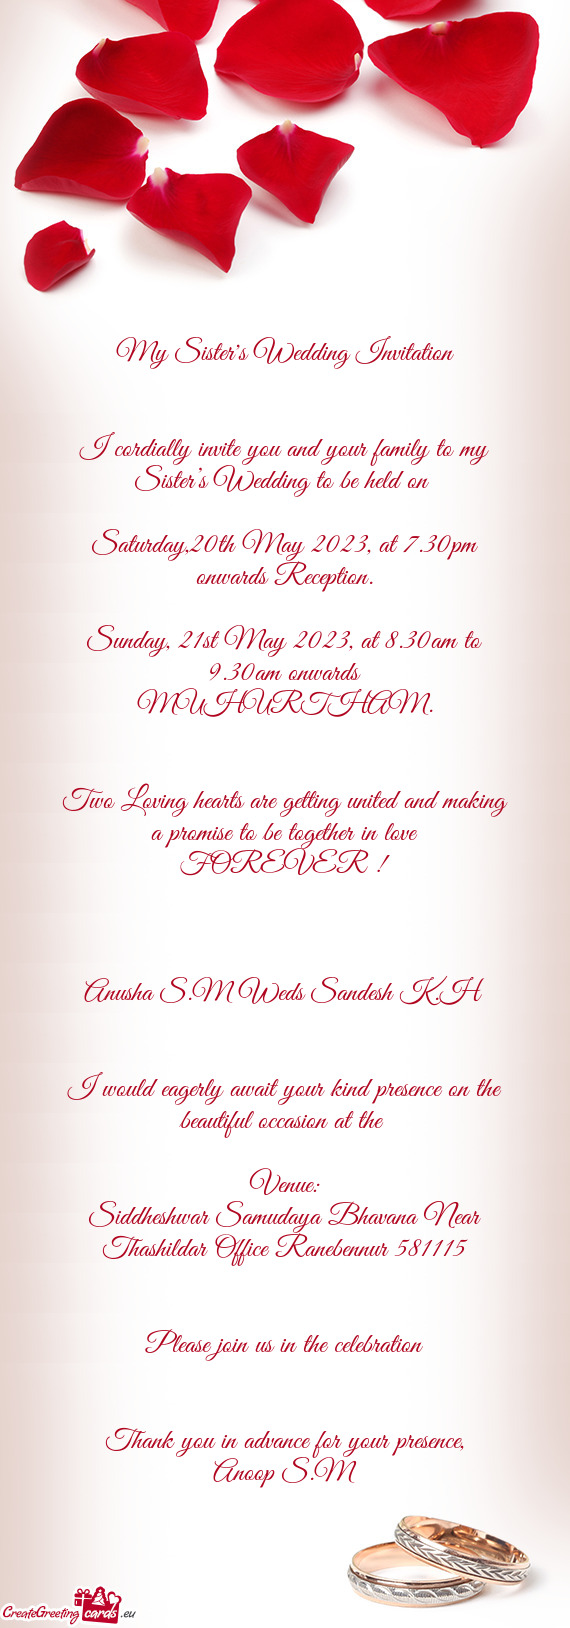 Saturday,20th May 2023, at 7.30pm onwards Reception